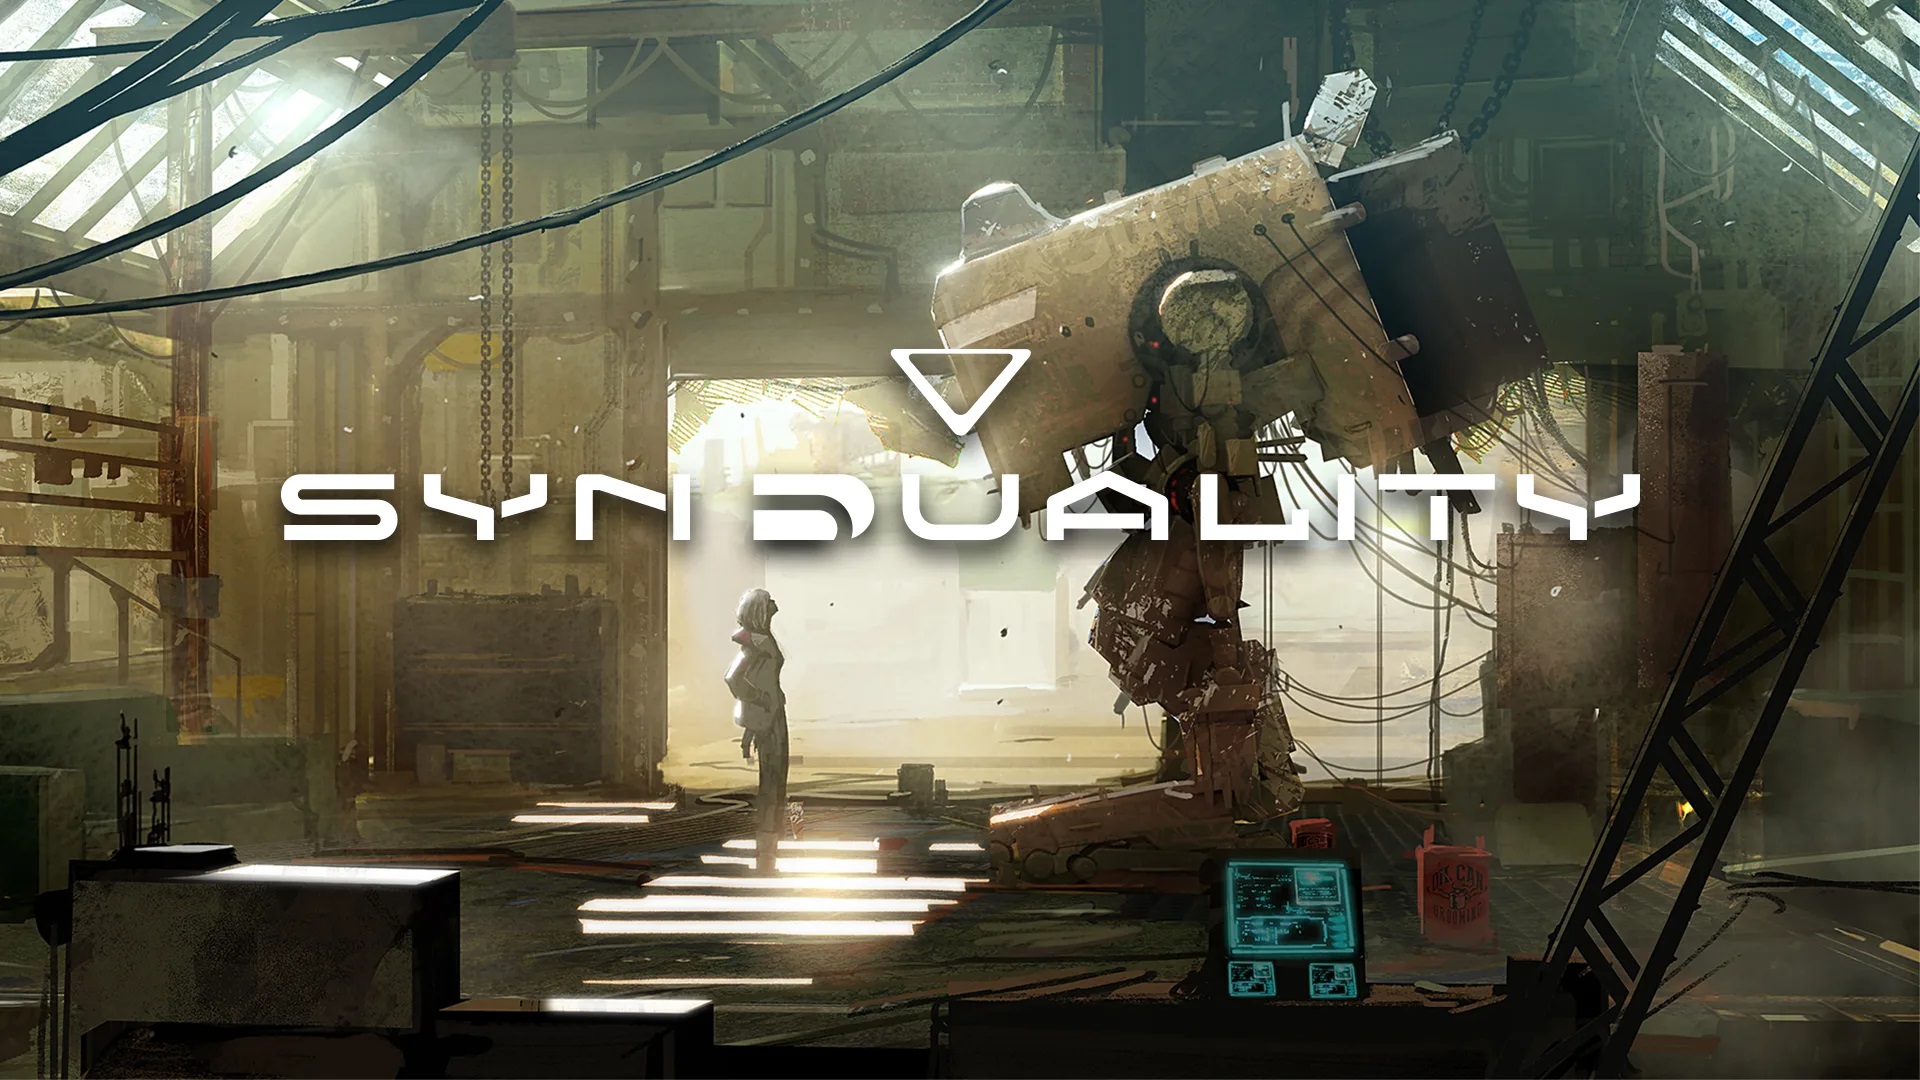 رونمایی از جزئیات و تصاویر هنری جدید بازی Syndulaity